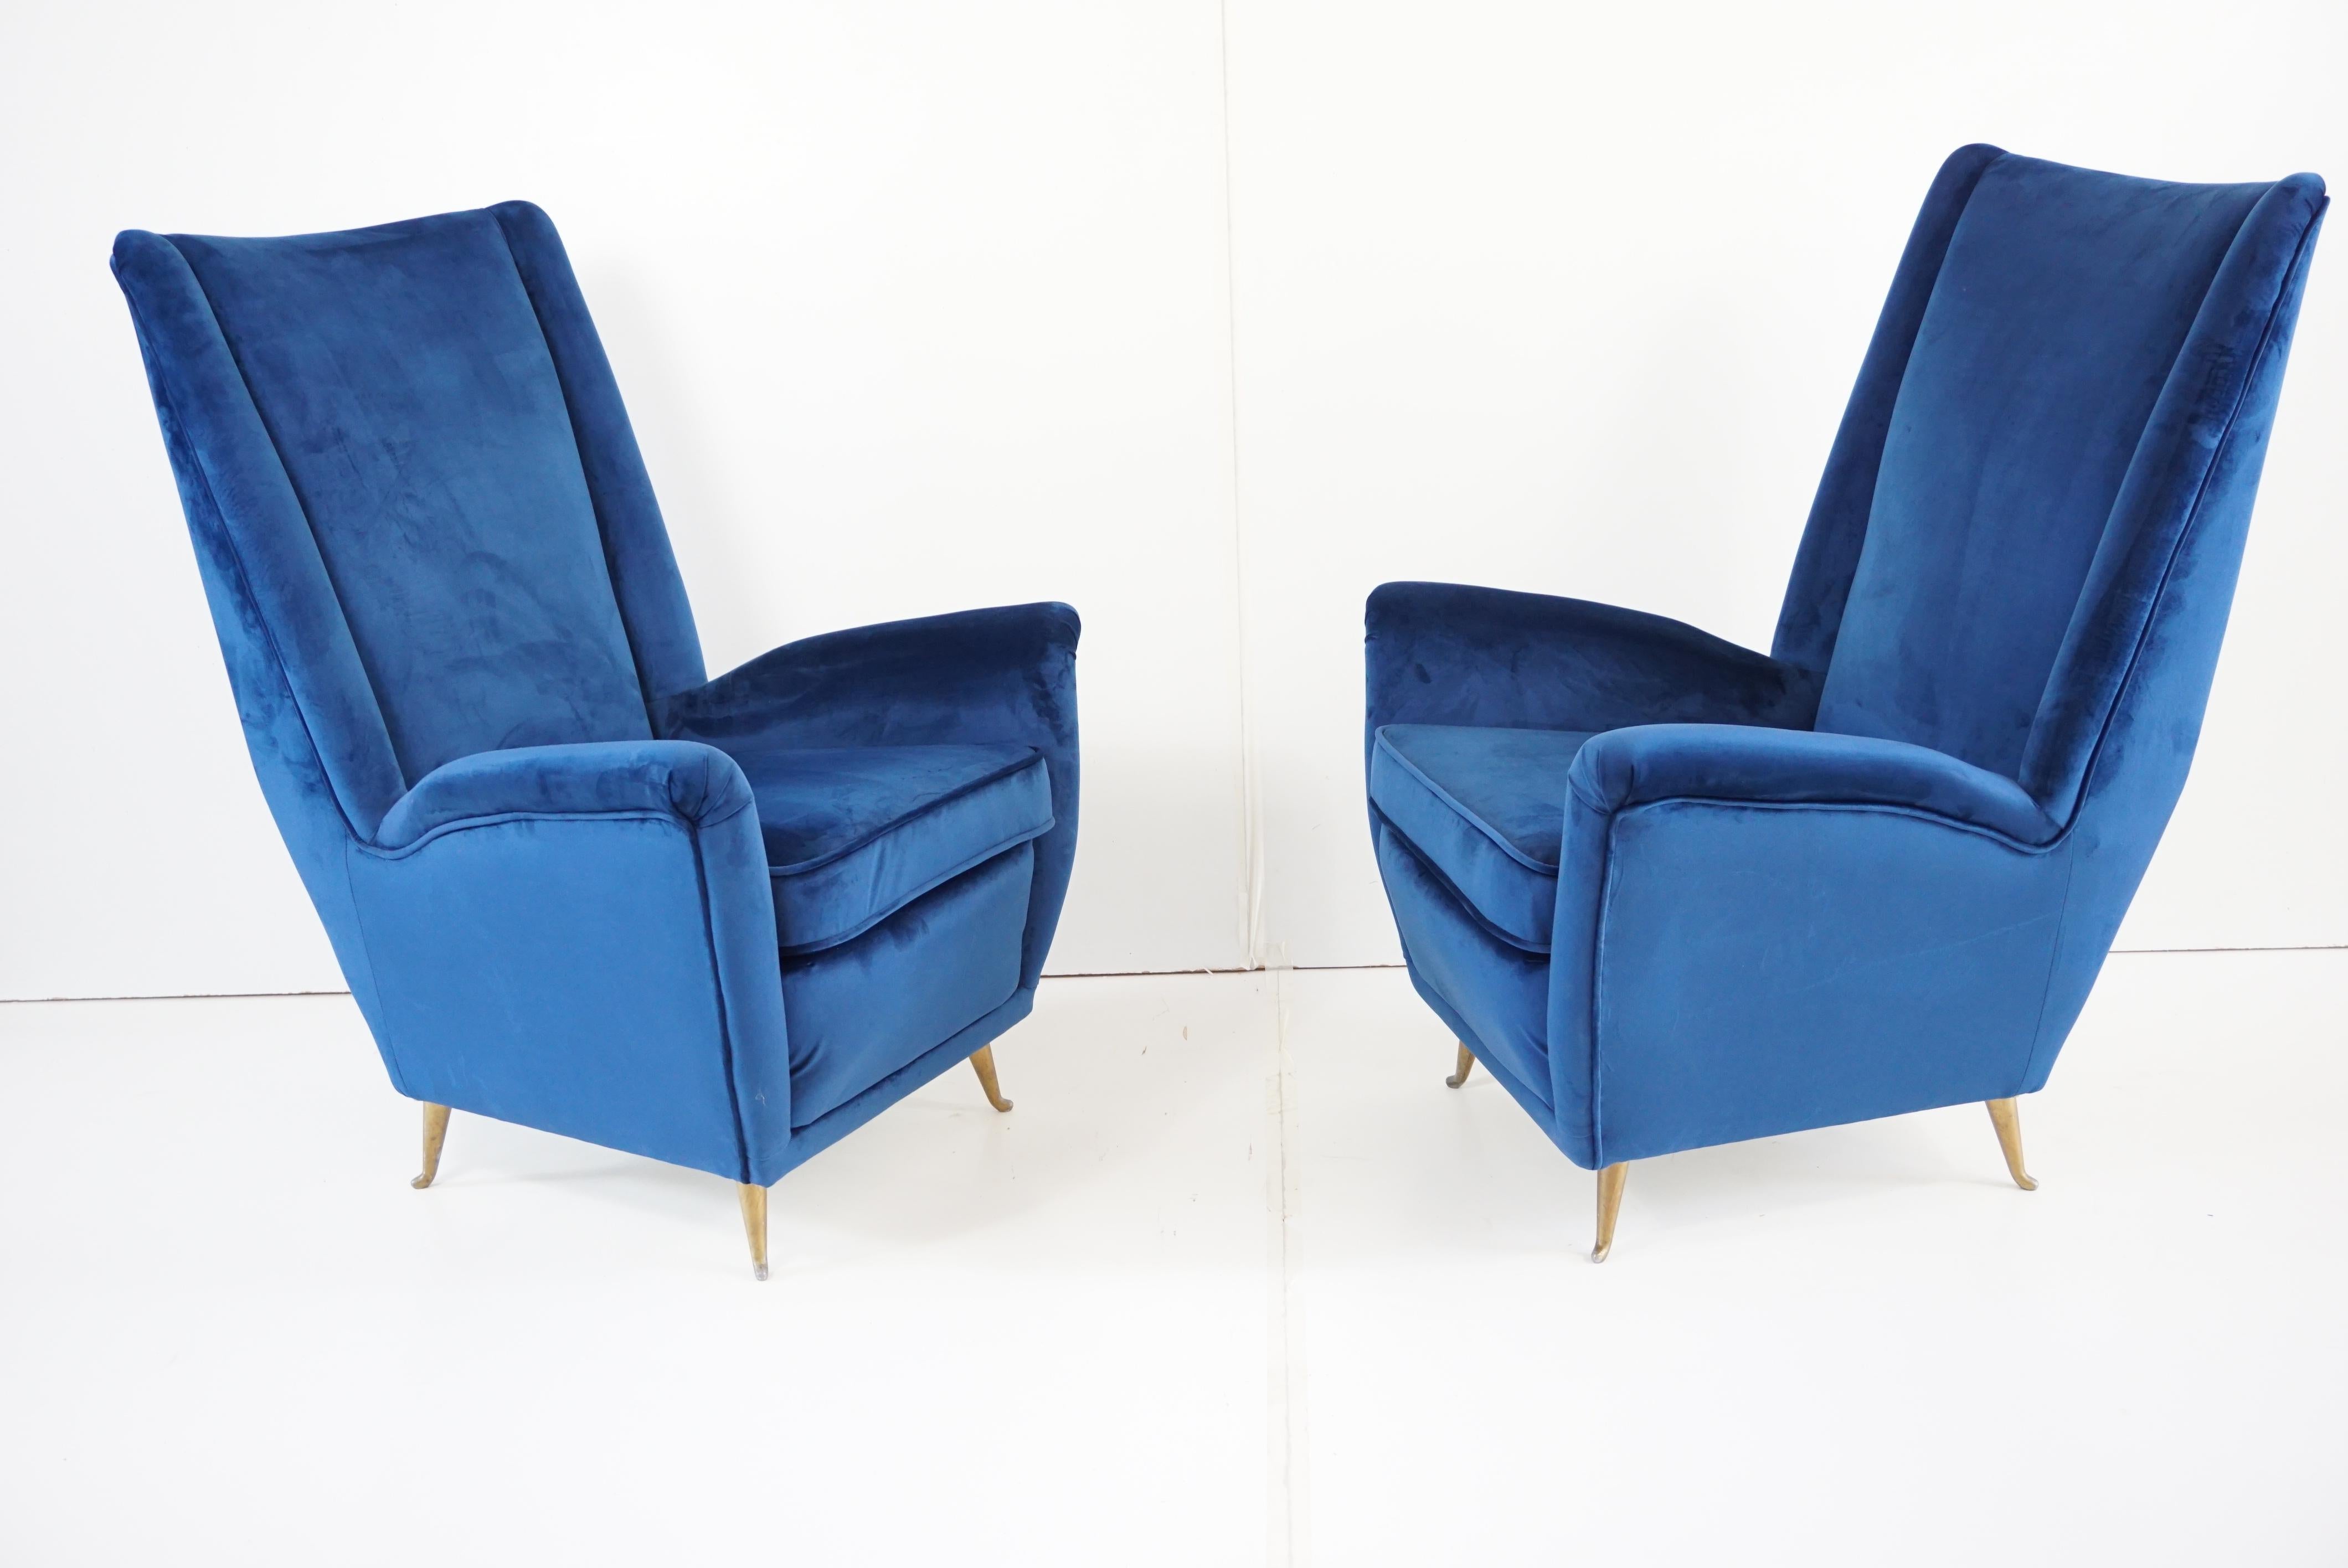 Paire de fauteuils bergères en velours bleu GIO PONTI, fabriqués par ISA Arredamenti Bergamo, vers 1950.
Ce modèle conçu par Gio Ponti à la fin des années 40 a été fabriqué par Cassina avec le numéro 